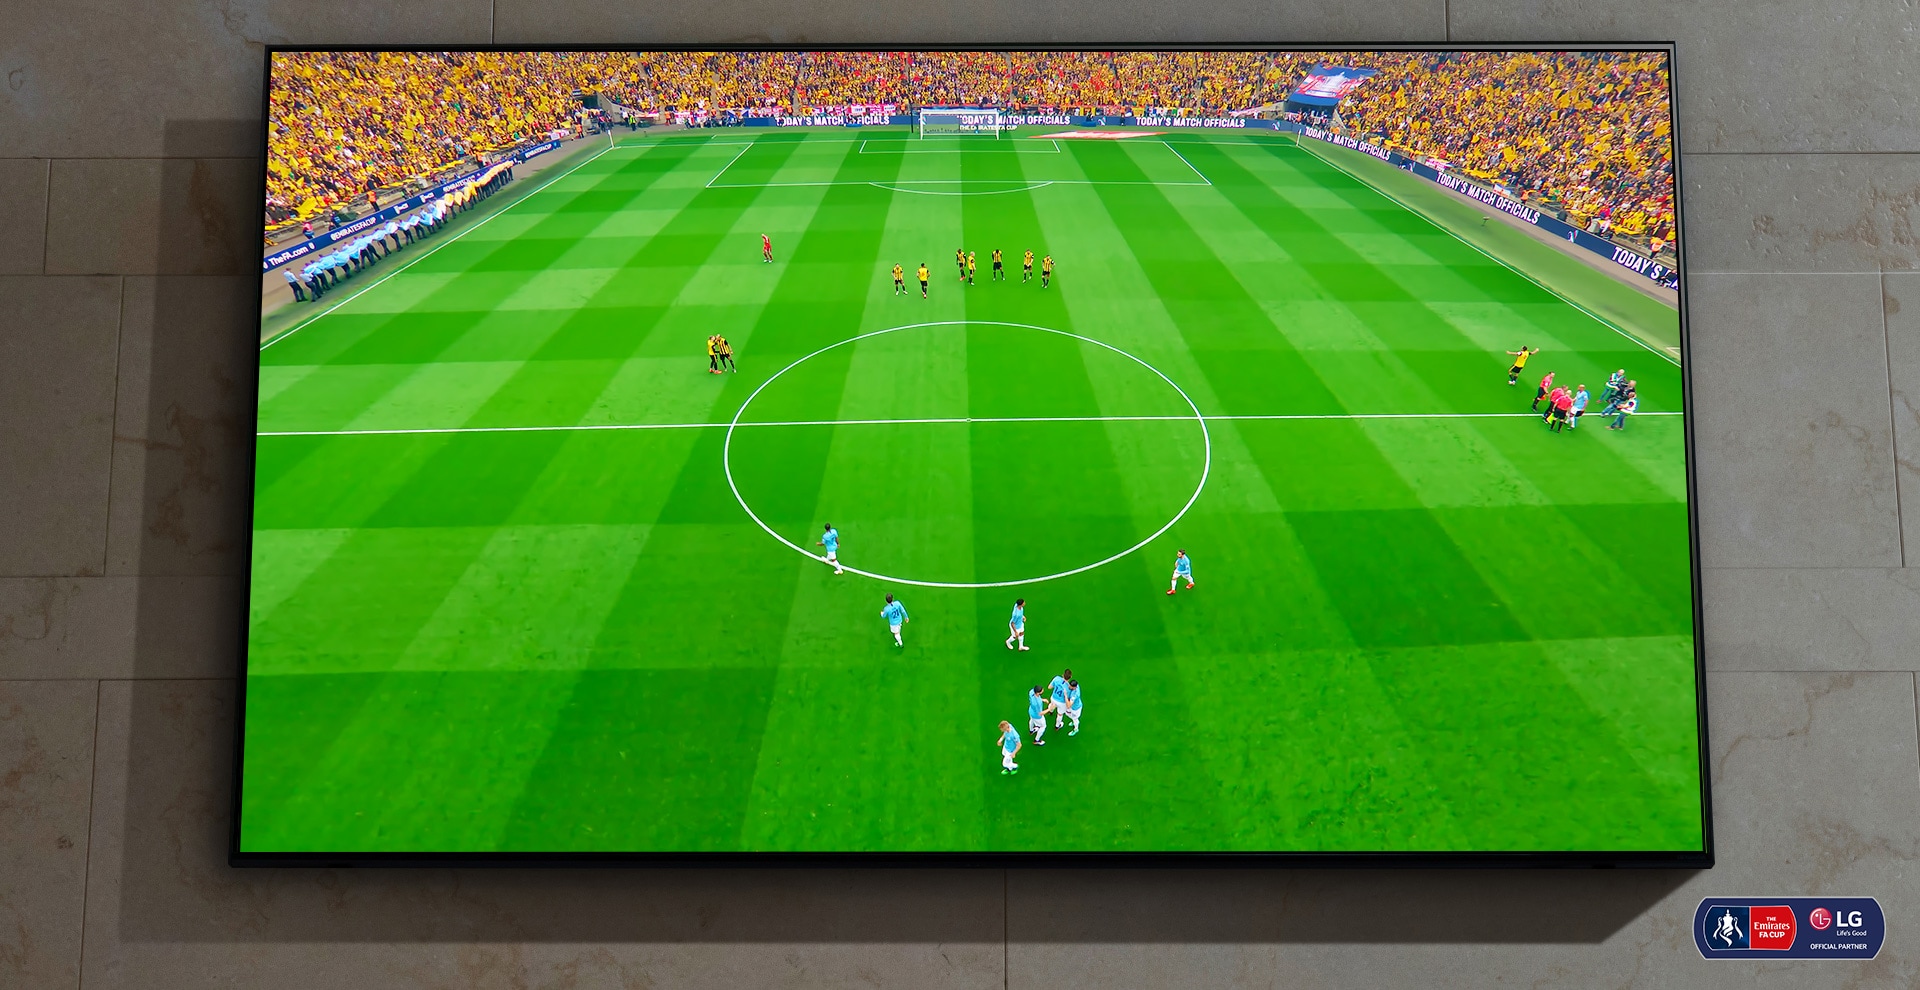 NanoCell TV е монтиран на стената. На екрана се вижда футболен мач, който ще започне всеки момент.